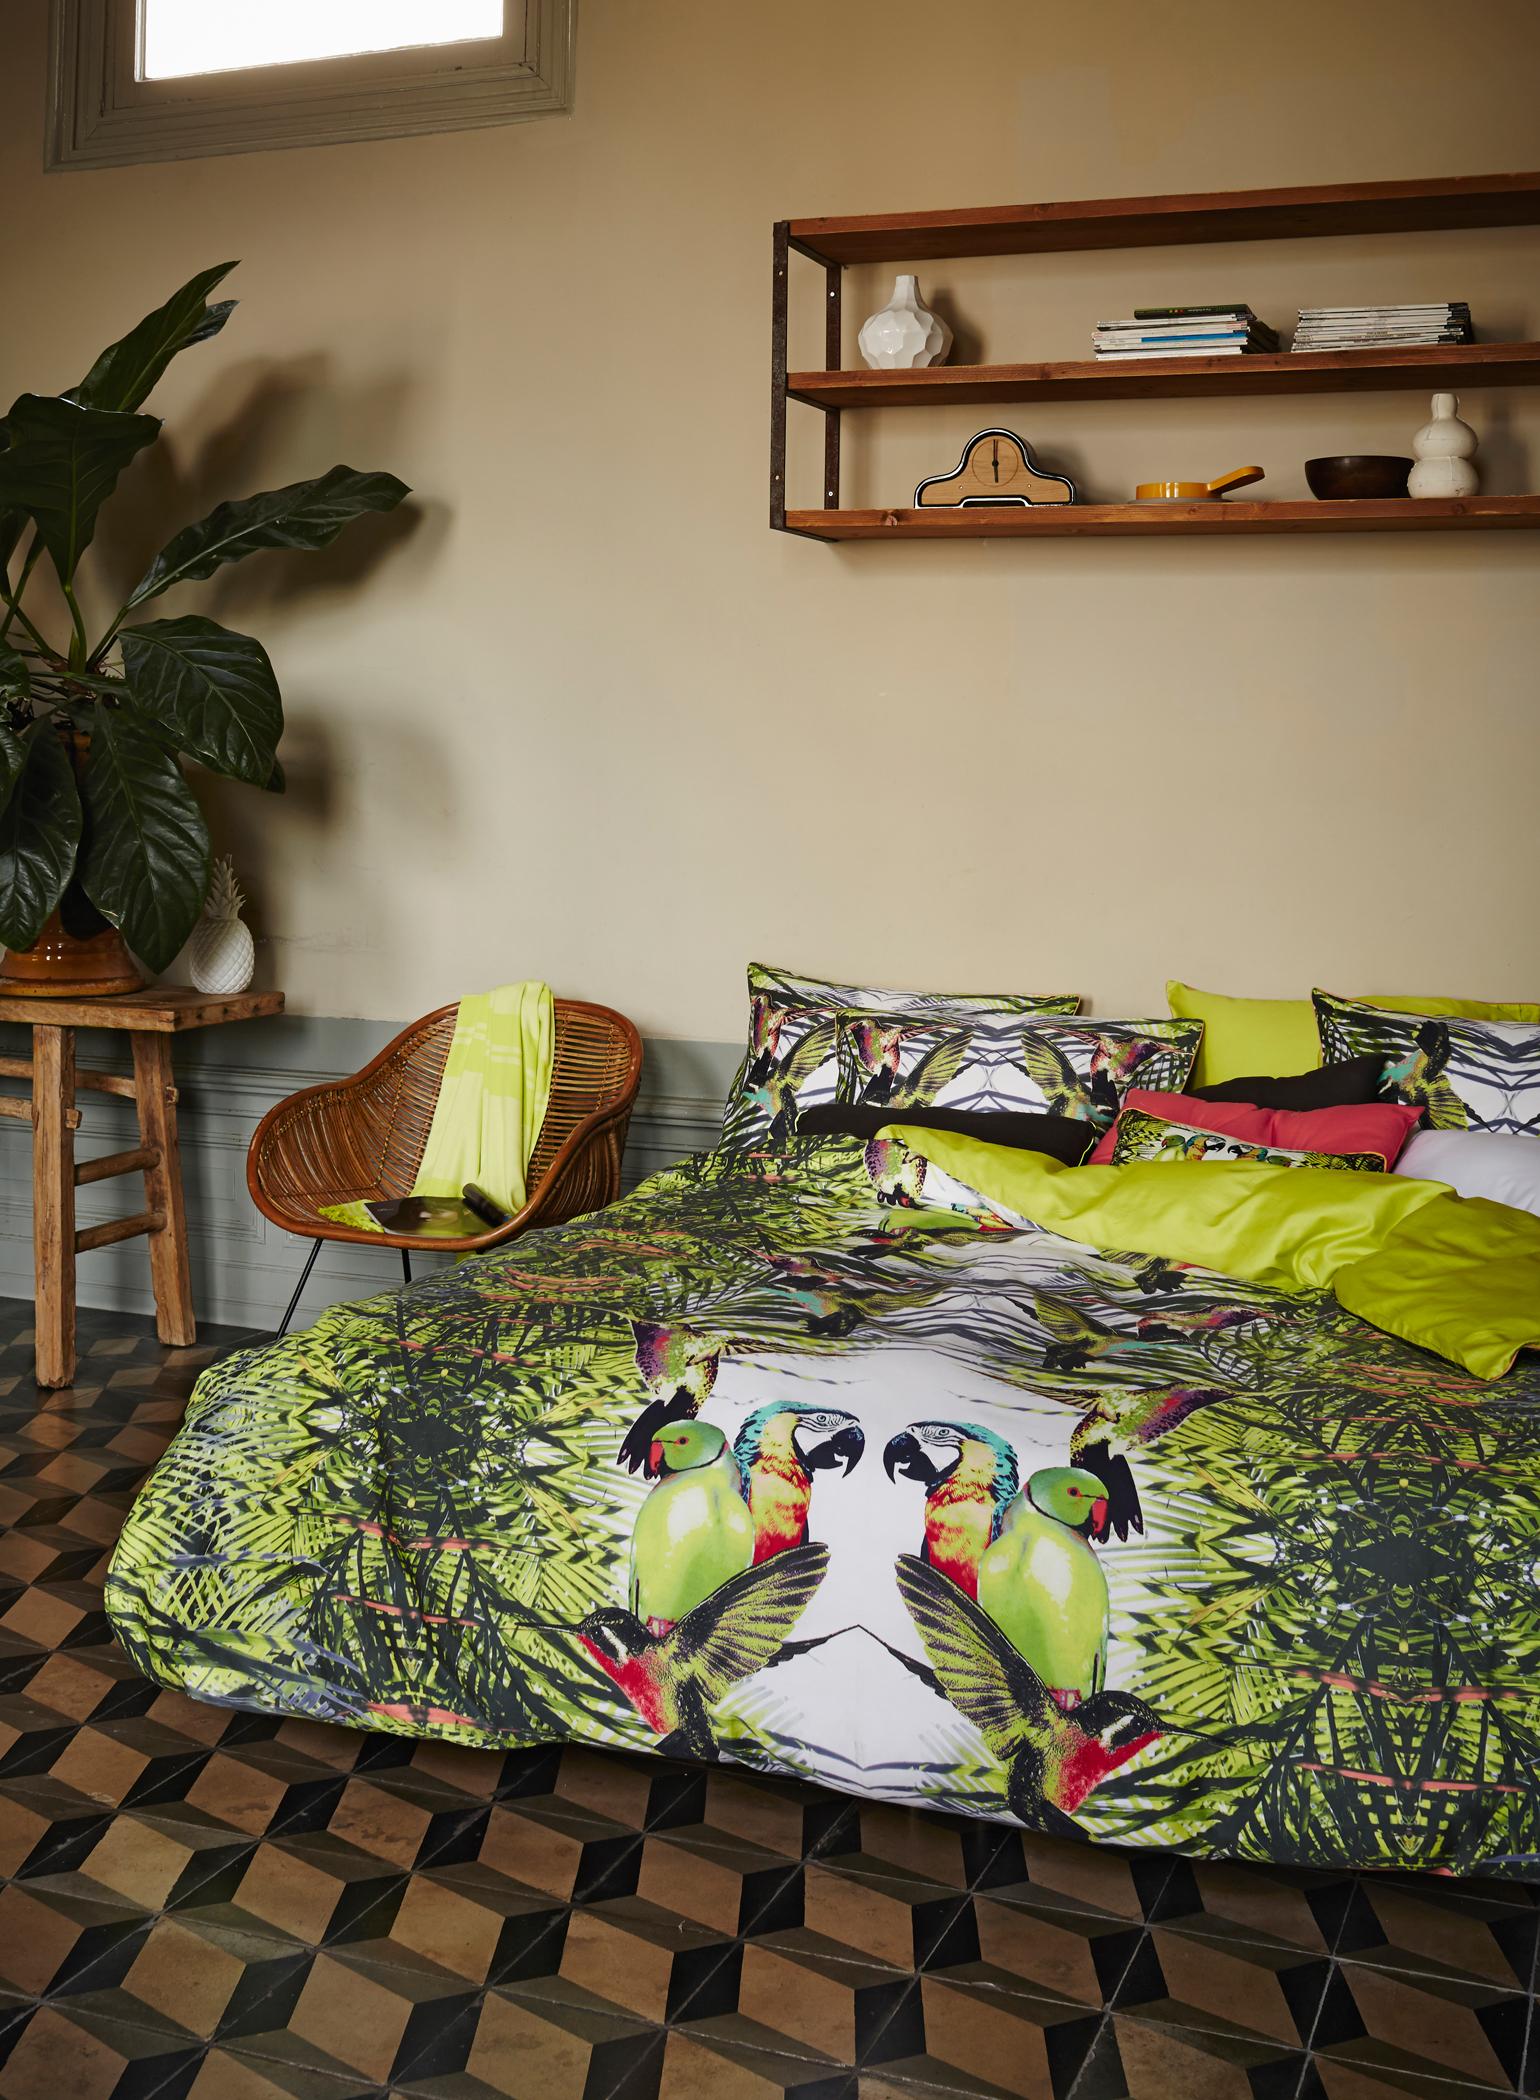 Dschungel-Feeling für das Schlafzimmer #fliesen #bettwäsche #hölzerneswandregal #beigewandfarbe ©Essenza Home/Essenza